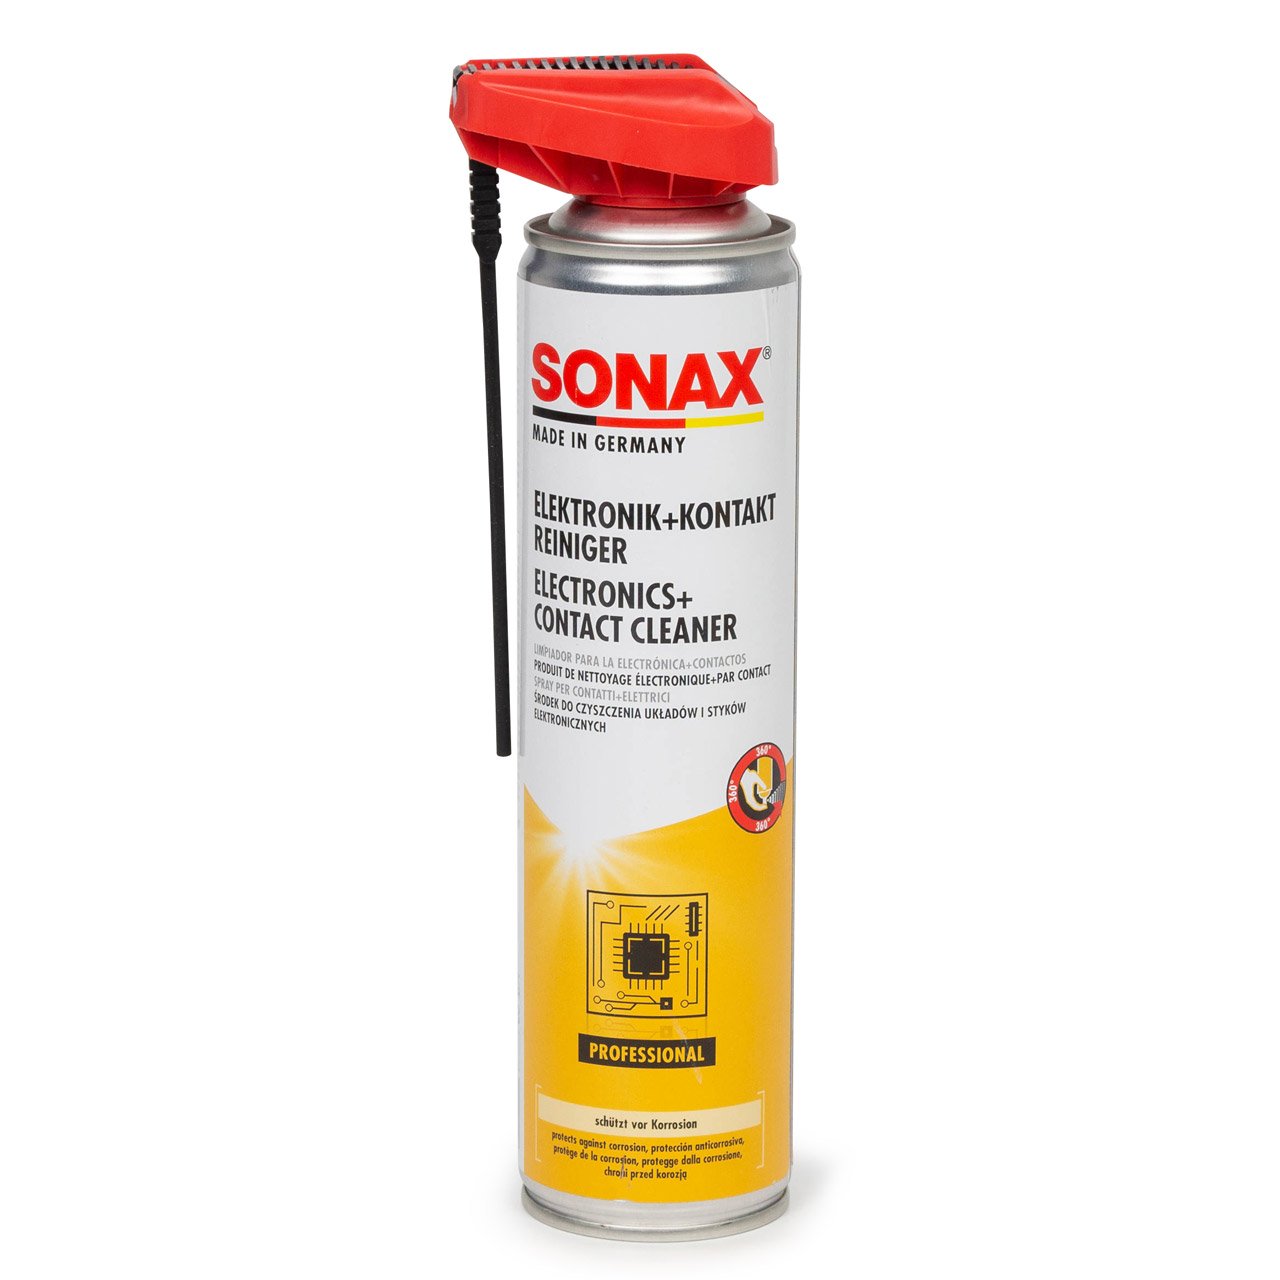 SONAX 04603000 Elektronik + Kontaktreiniger Spezialreiniger mit EasySpray 400ml